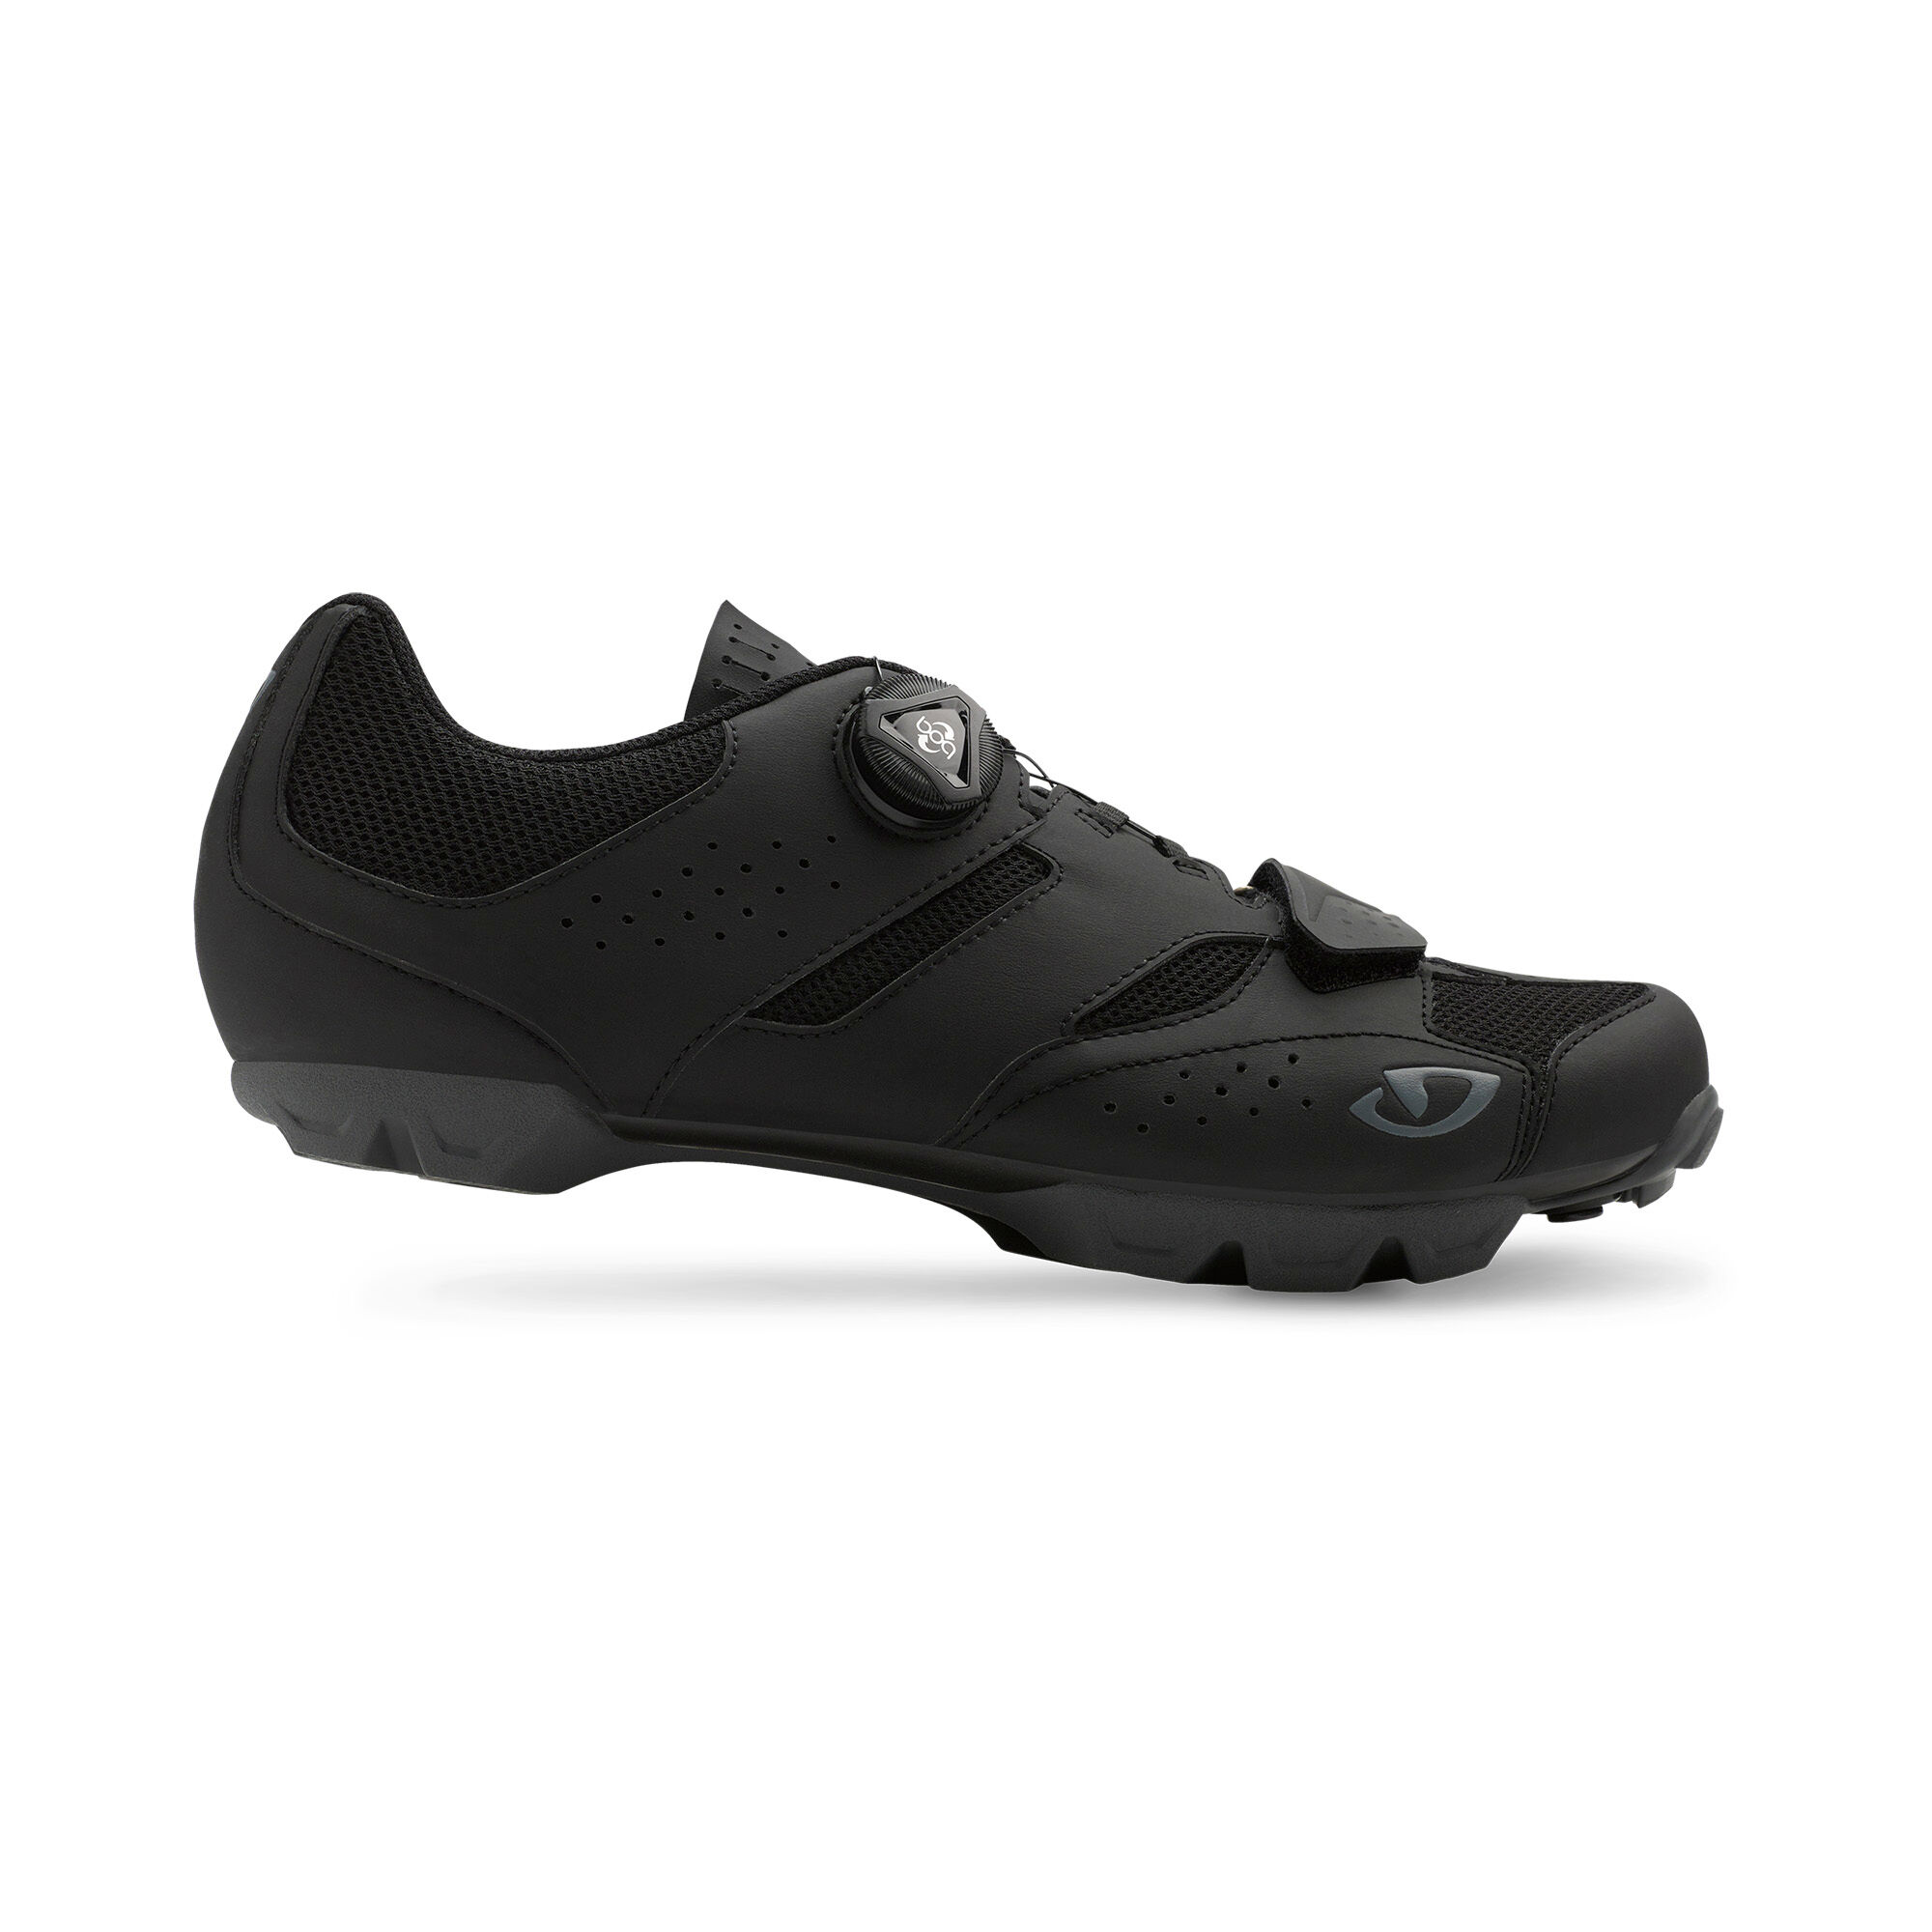 Giro Cylinder - Mountain Bike shoes - Men's